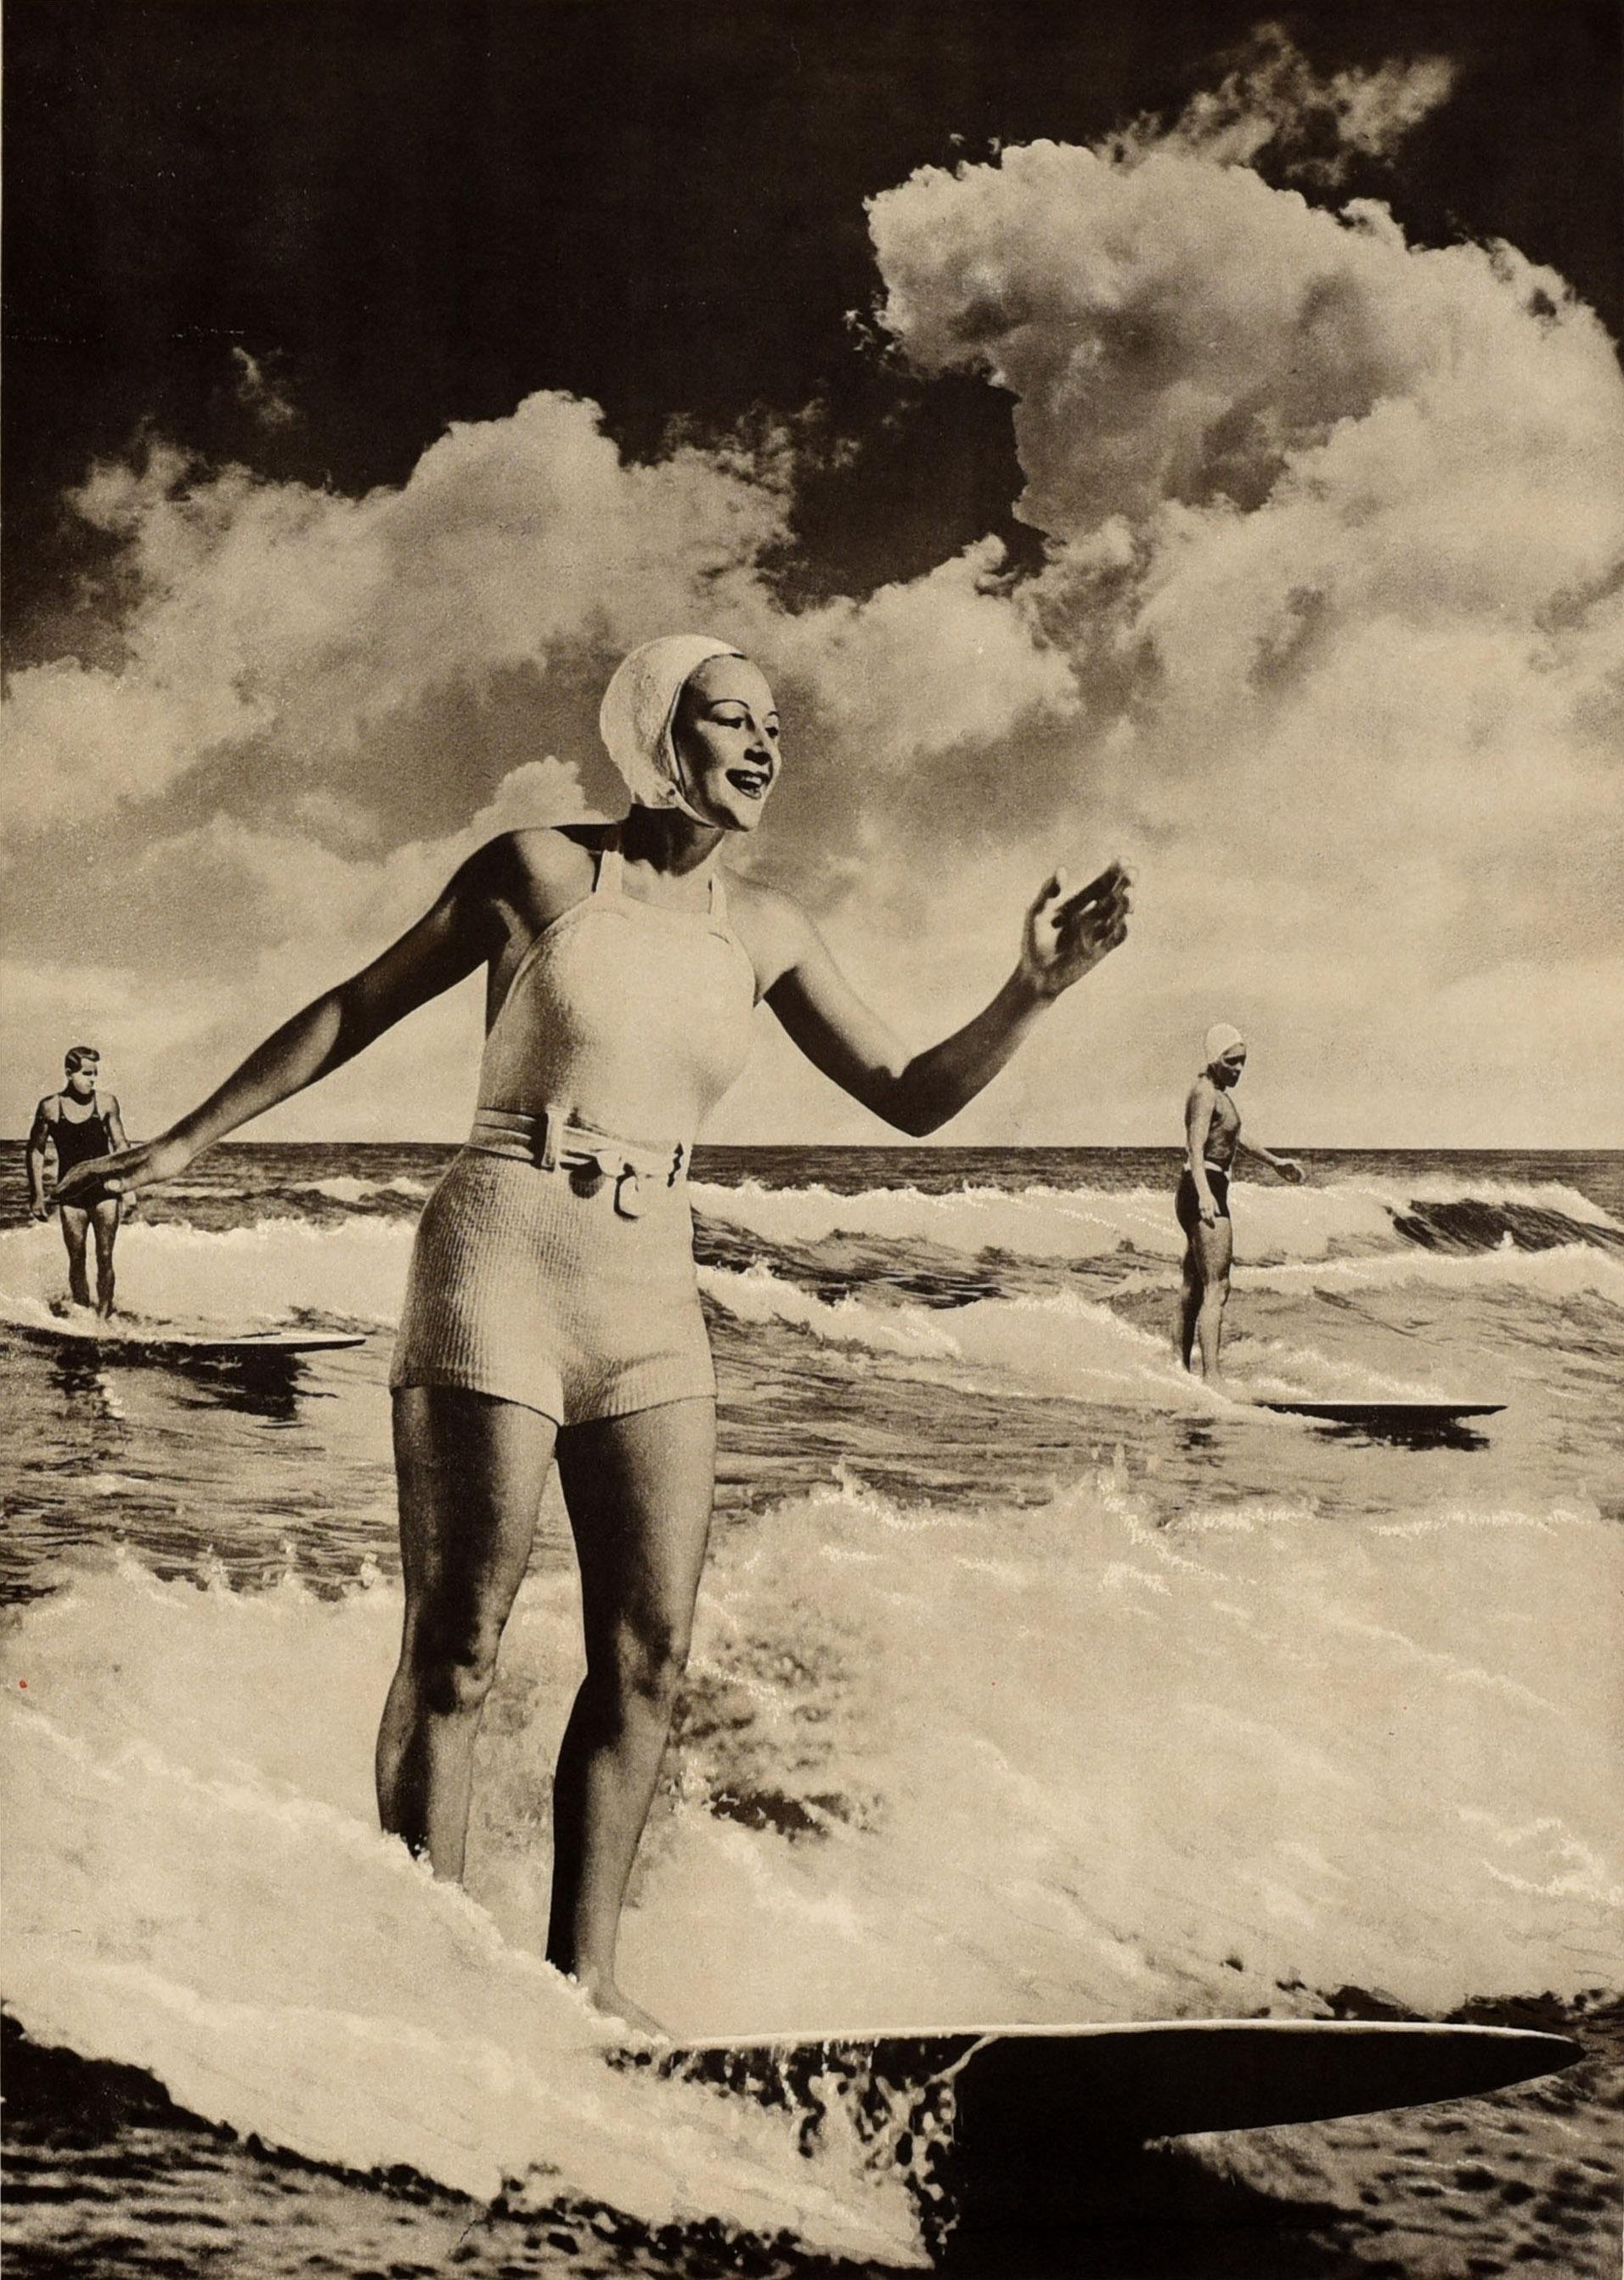 Original Vintage Sport thematische Reiseplakat - Surfen Australien - mit einem Schwarz-Weiß-Foto von einer lächelnden Dame in einem Badeanzug und Kappe Surfen auf einer Welle mit zwei Männern auf Surfbrettern im Meer im Hintergrund, das Bild in